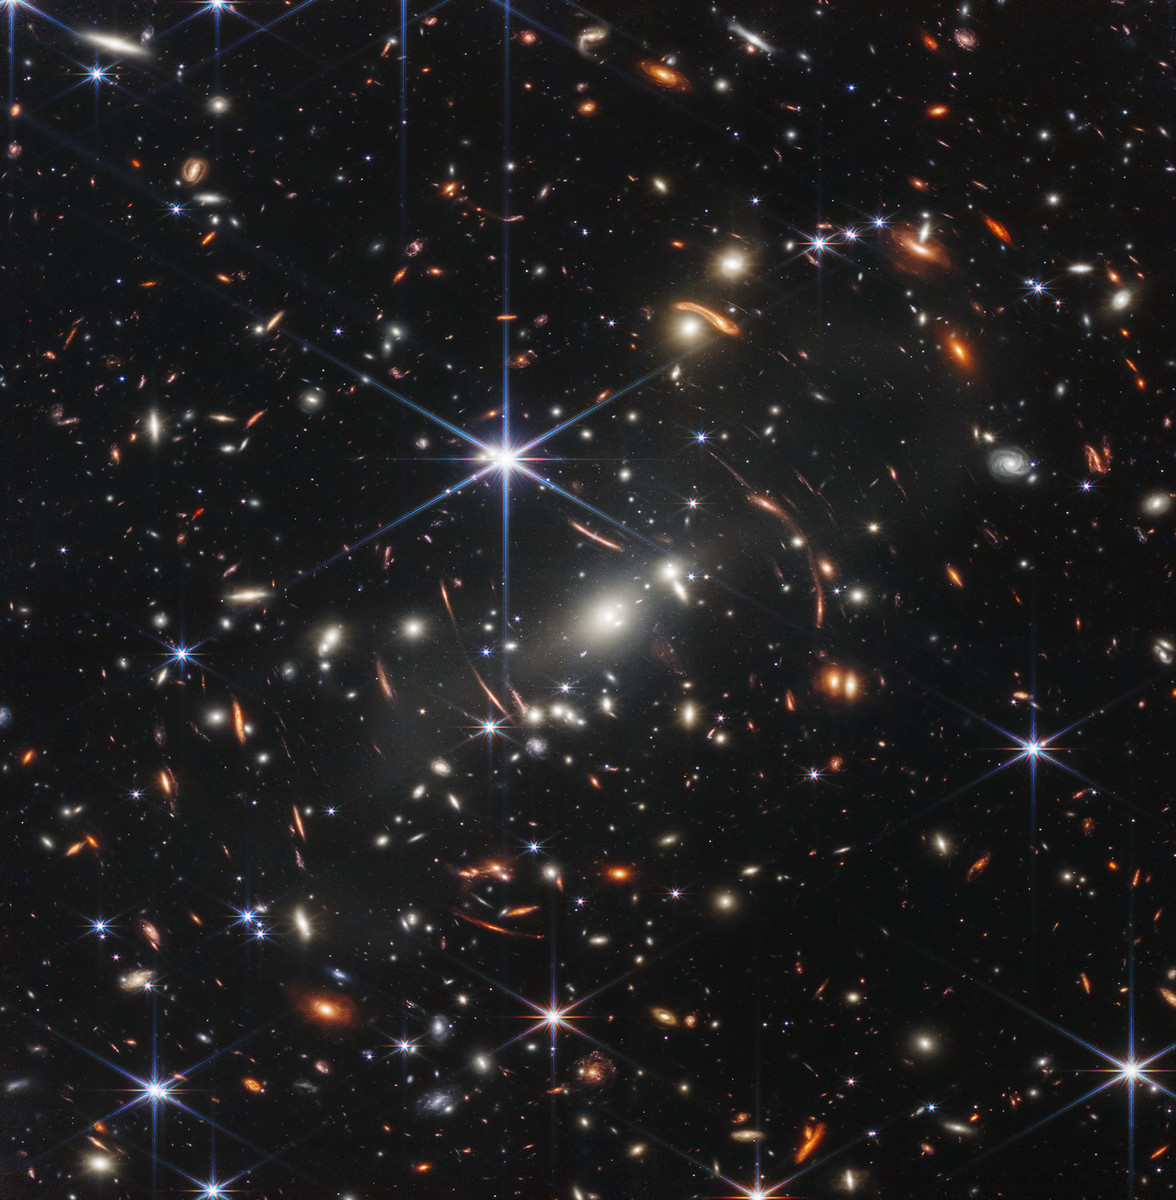 Opptak med JWST som viser galakser og galaksehoper